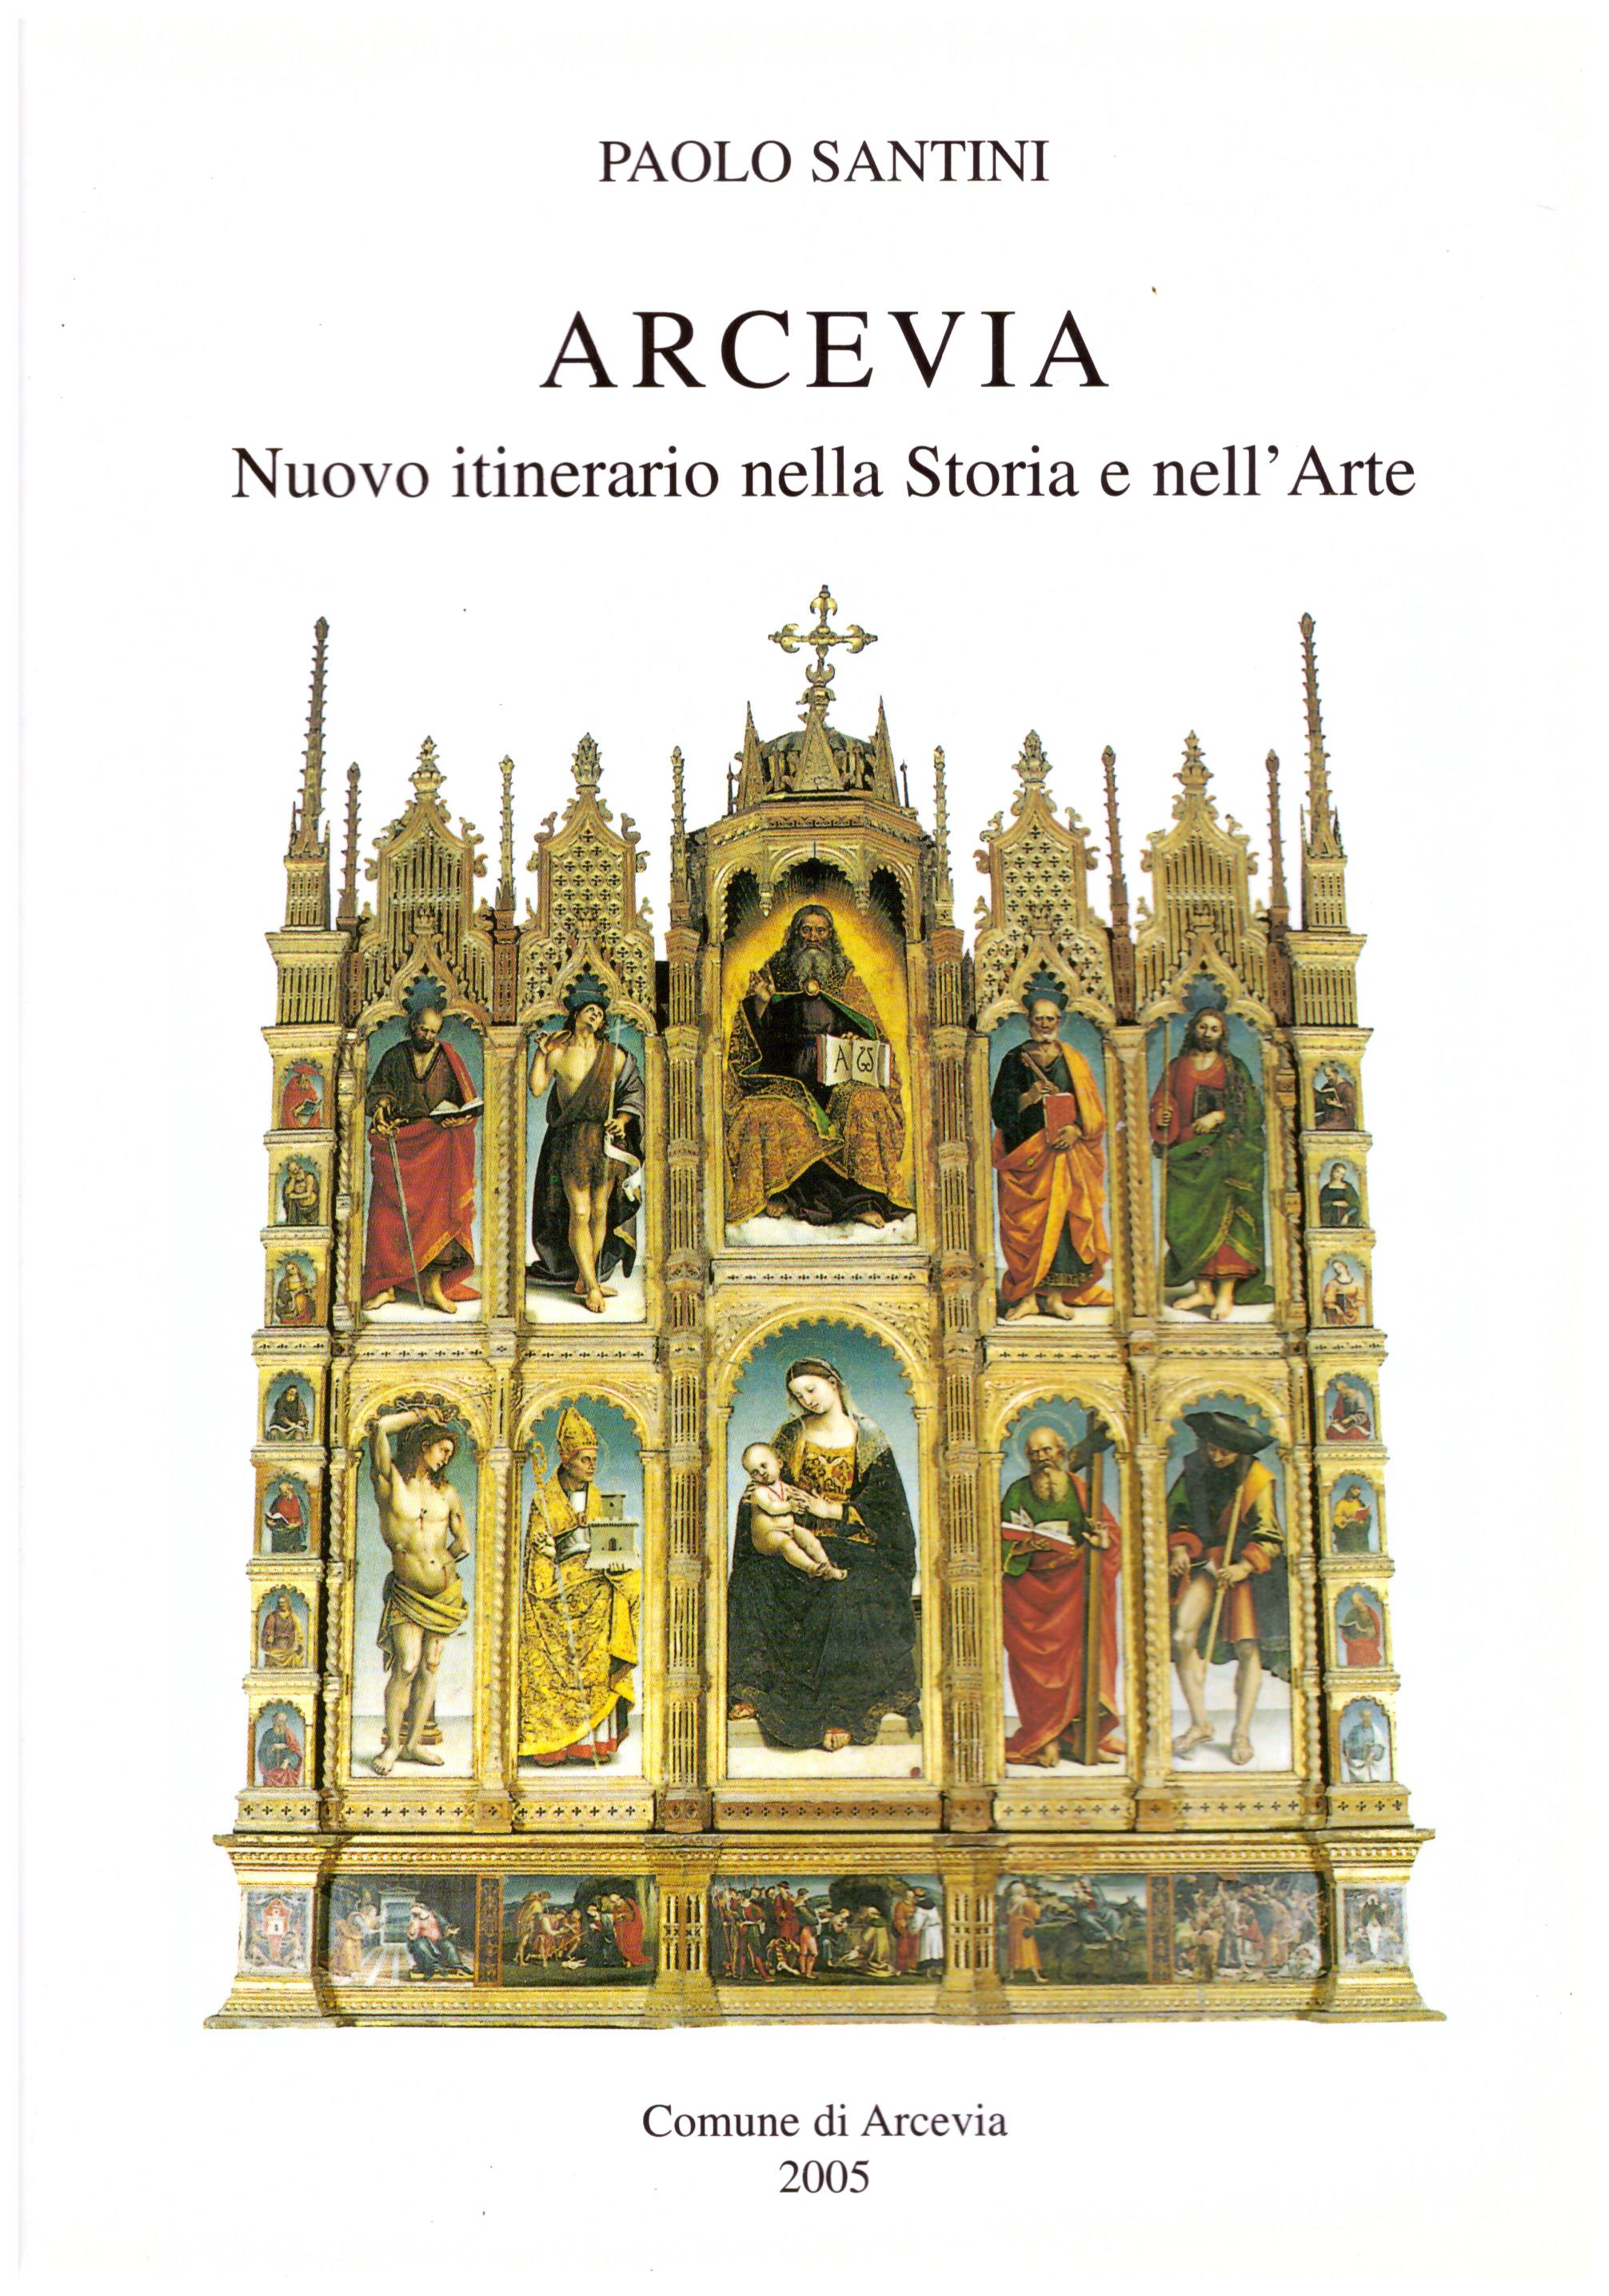 Titolo: Arcevia, nuovo itinerario nella Storia e nell'Arte  Autore: Paolo Santini  Editore: Pomel, Roma 2005